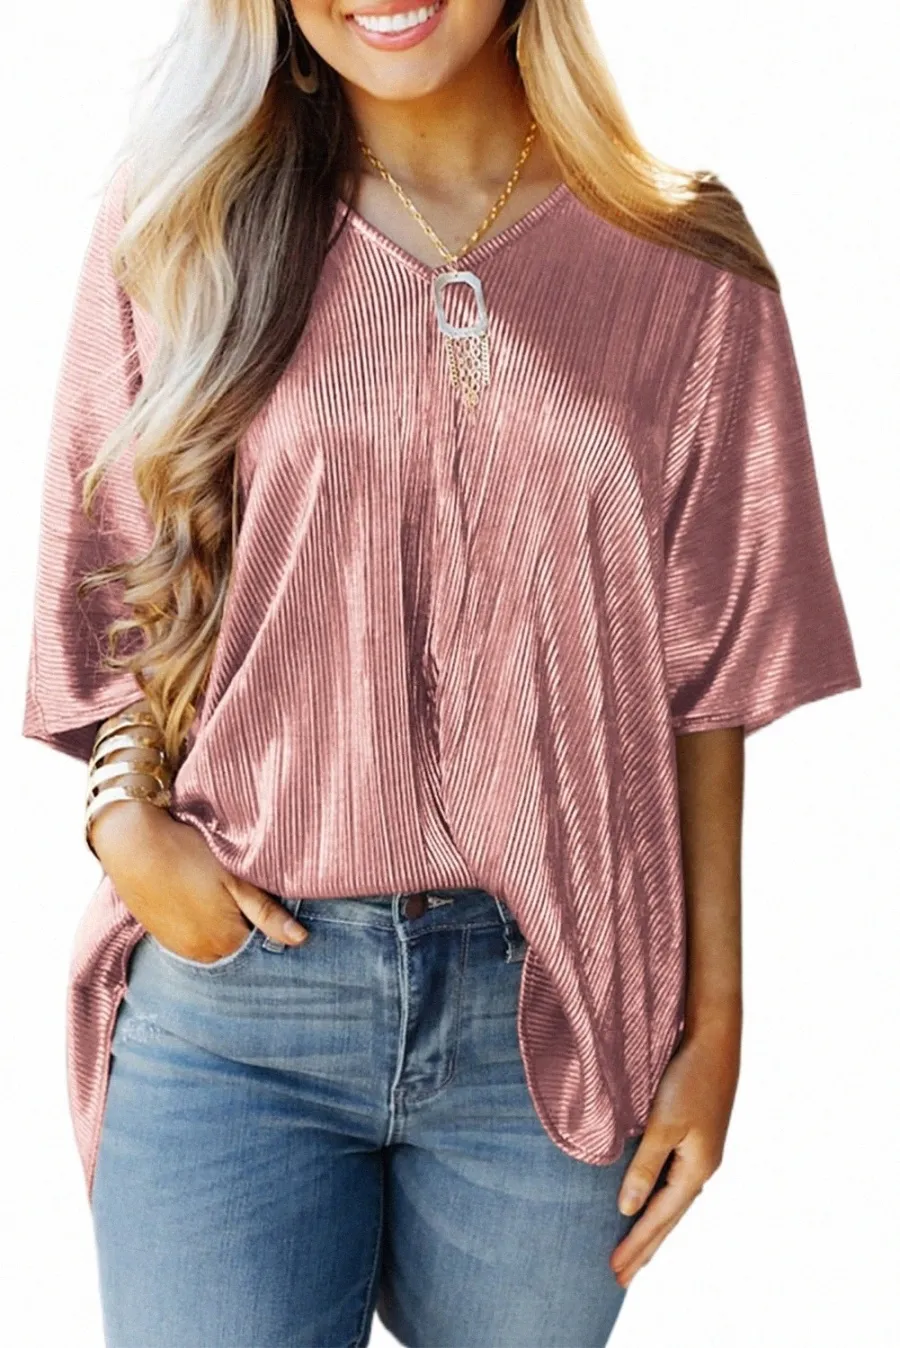 roze koperen textureerde oversized folie T-shirt 2023 Hot New V3IT#